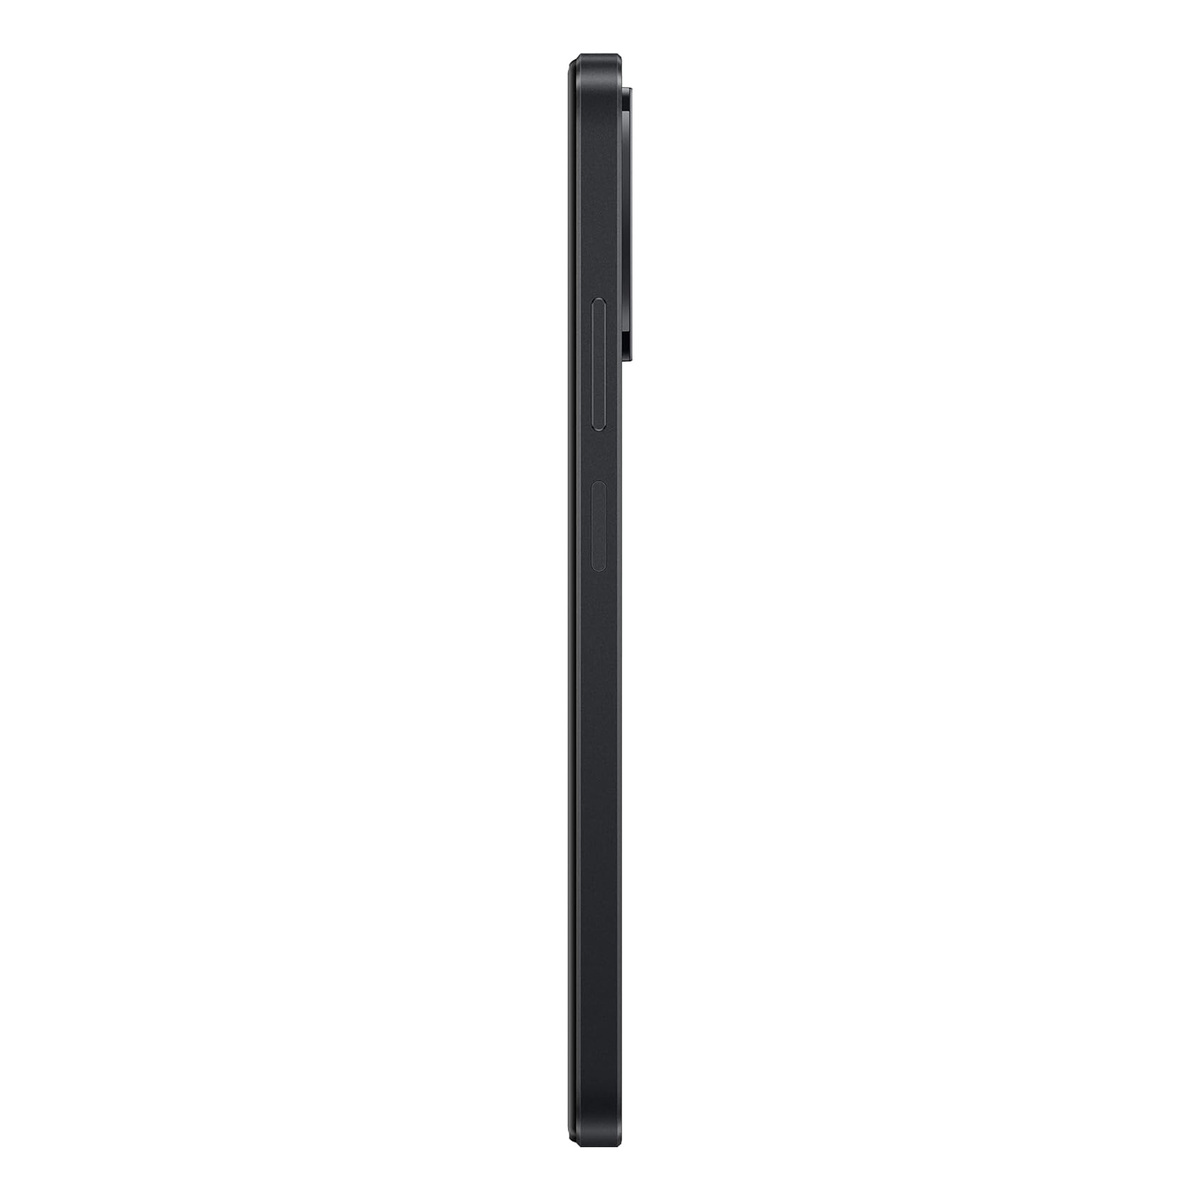 Oppo A38 4G Dual SIM Smartphone, 6 GB RAM, 128 GB Storage, Glowing Black